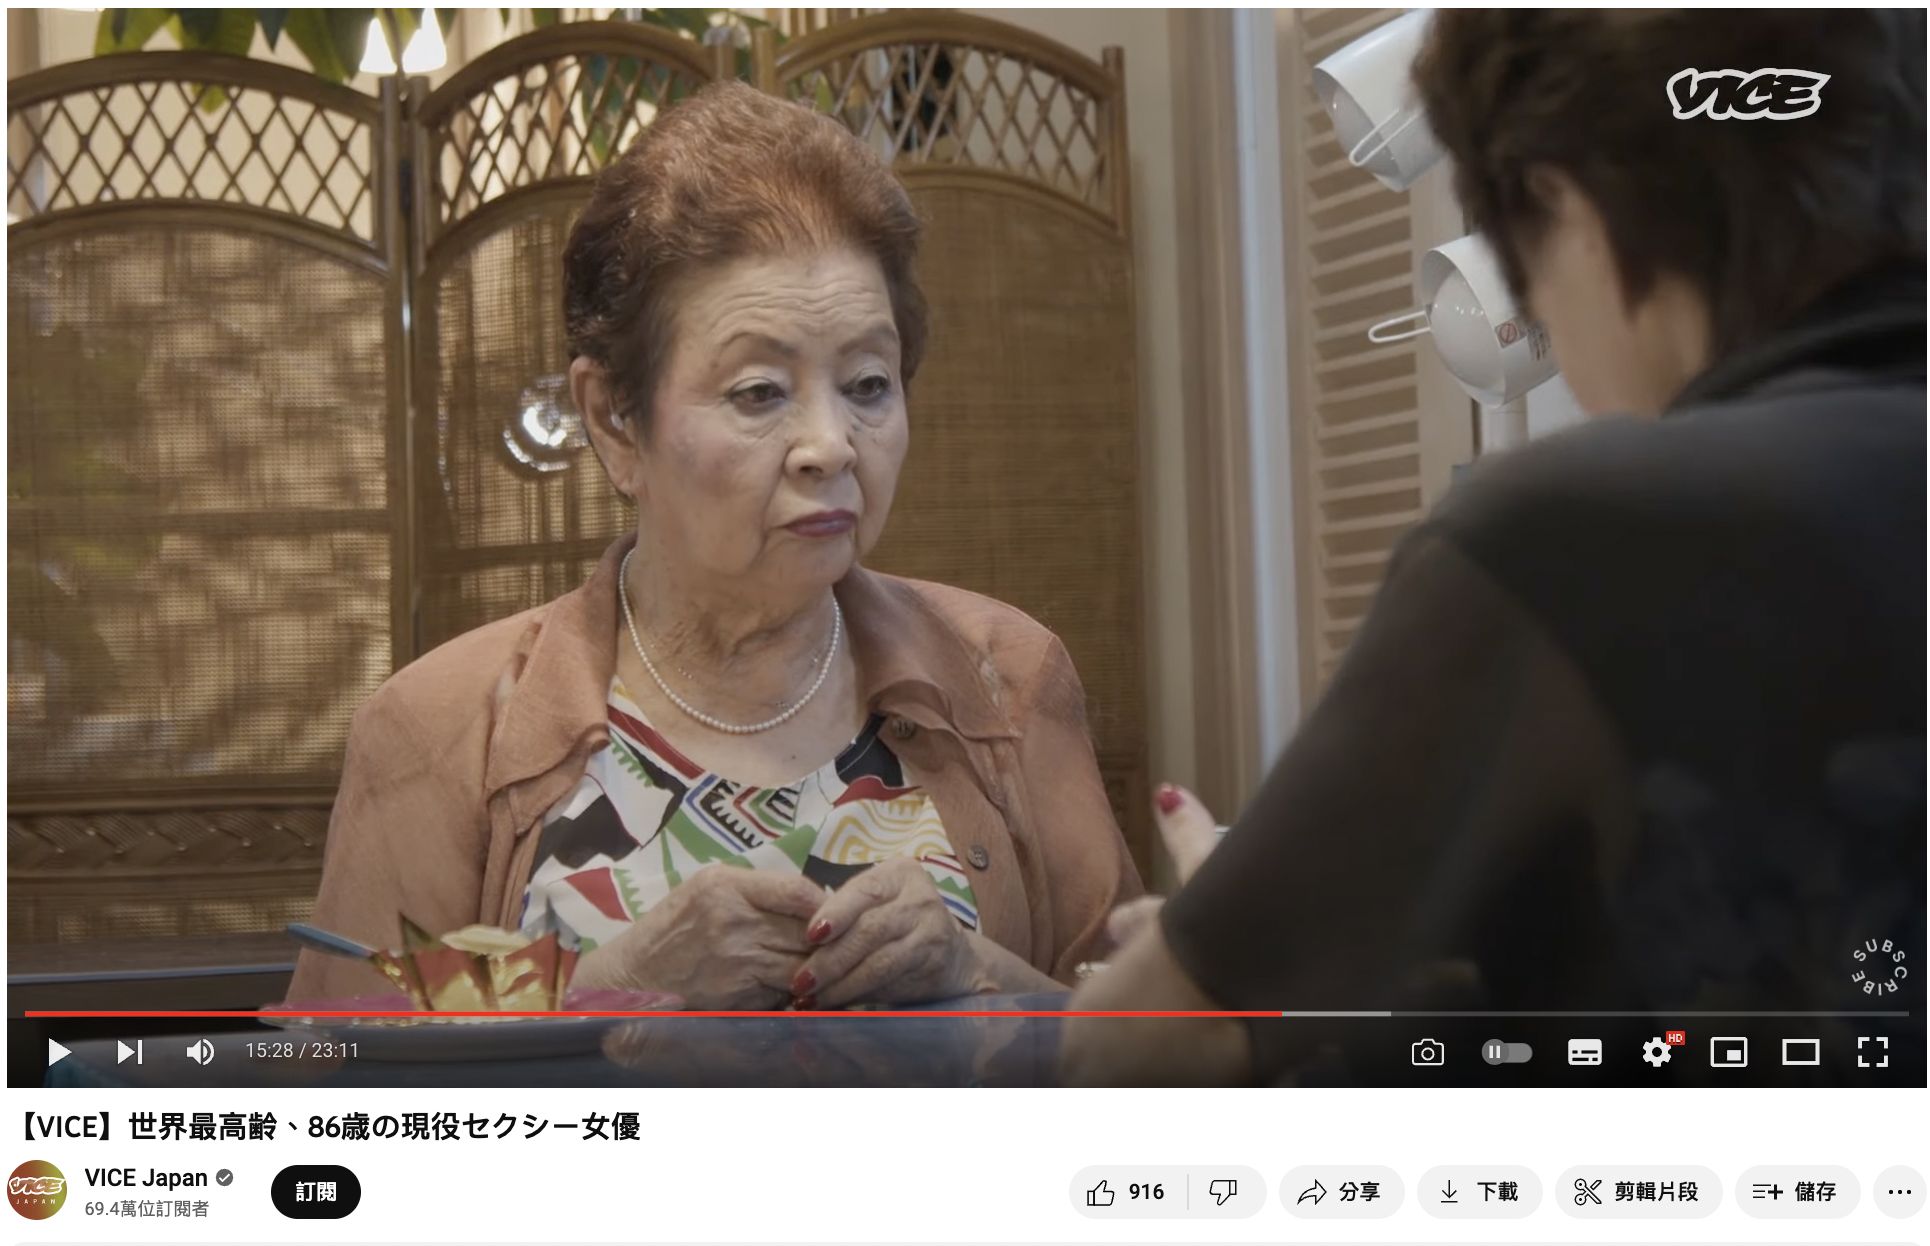 日本最老 AV 女優 現高齡 88 歲